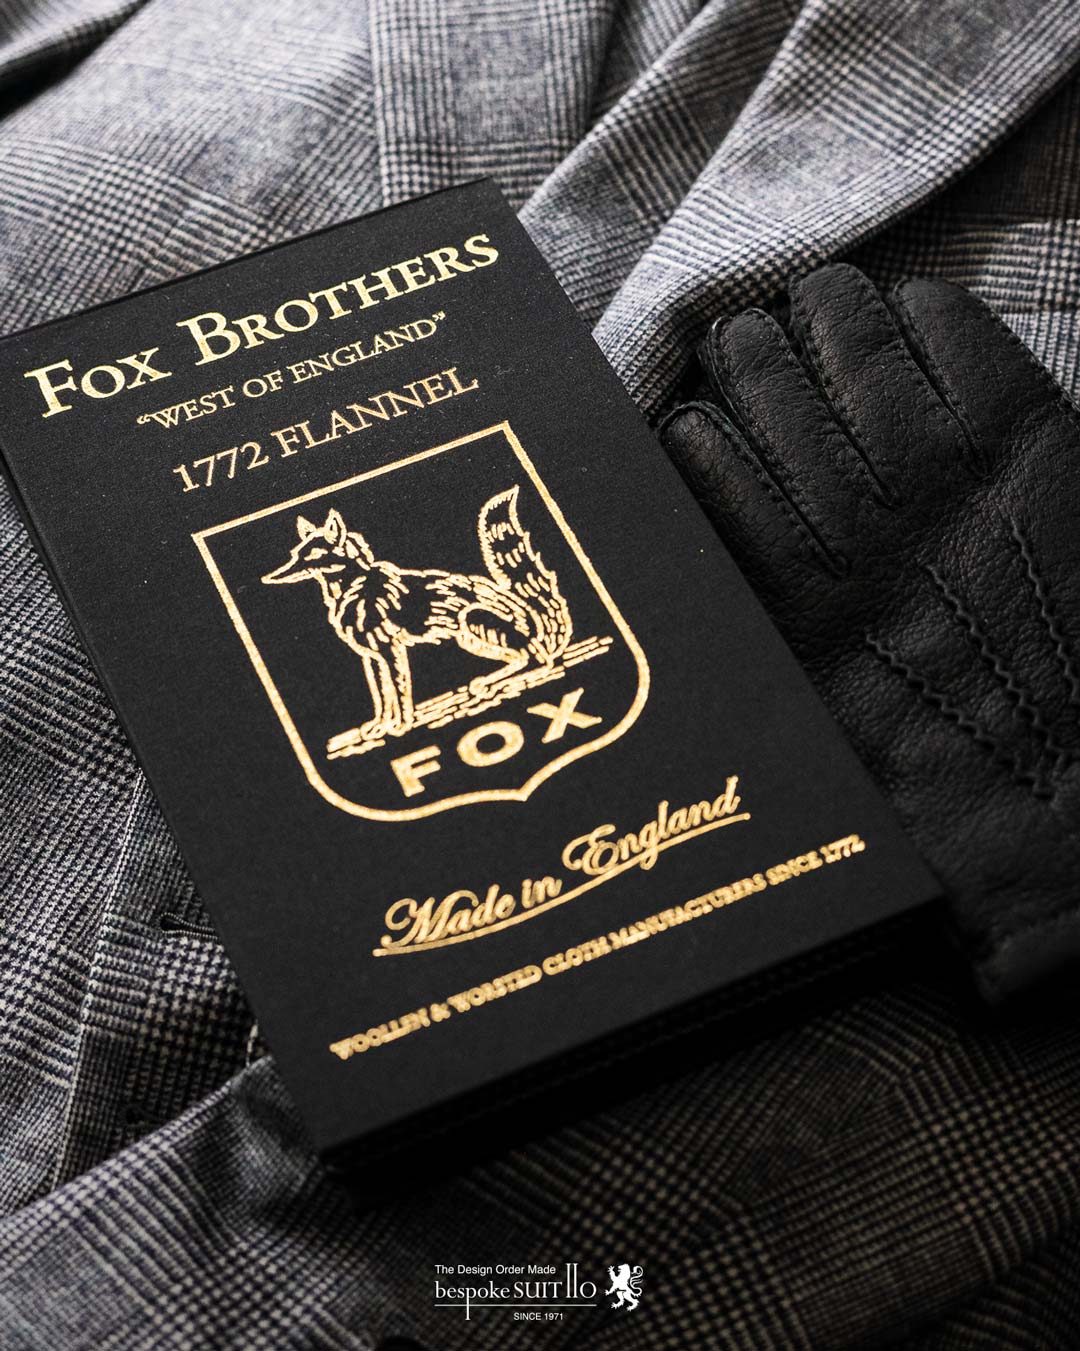 FOX BROTHERS,フォックス ブラザーズ,Collection,1772 FLANNEL(1772 フランネル）,90% WOOL & 10% CASHMERE 400/430gms,創業250 周年を迎えたフォックス ブラザーズの輝かしい歴史に加えられる、ラグジュアリーなメモリアルファブリック。カシミアフランネルのプレインカラーコレクションには、グレー、ブルー、ブラウン系の基本色の他に、多くのスペシャルカラーが編集されています。福岡県のオーダースーツ専門店 bspokeSUIT110